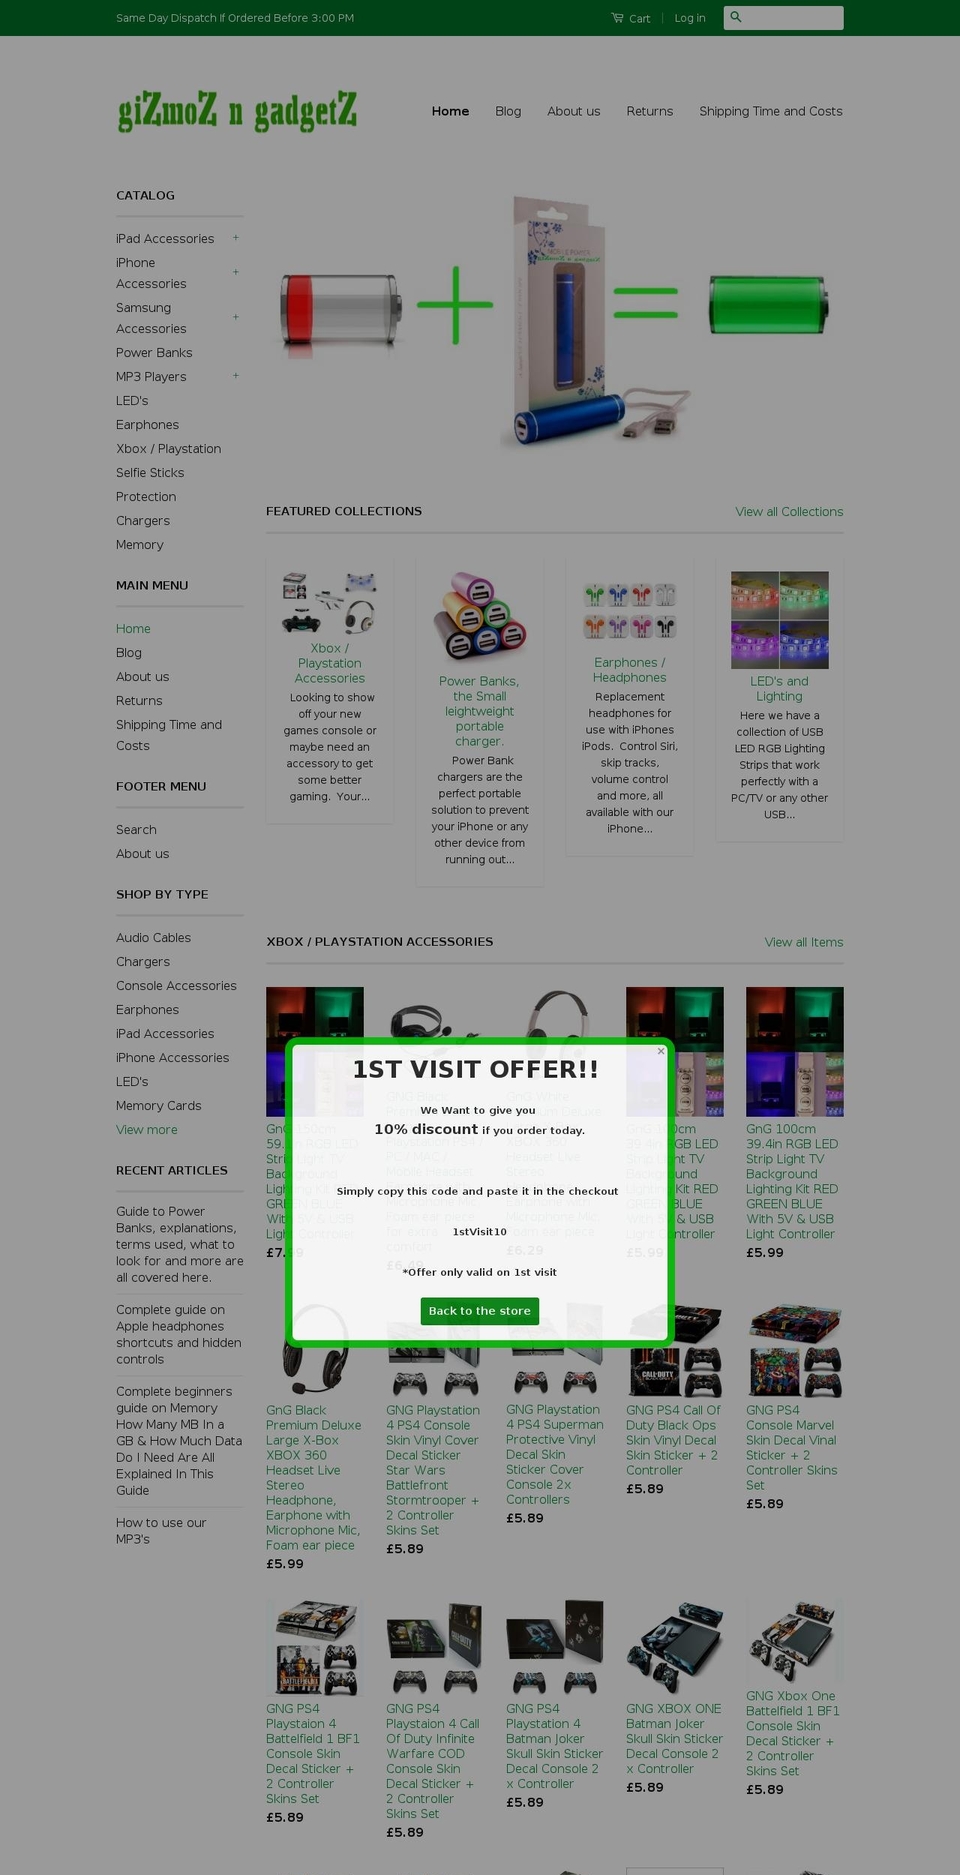 gizmozngadgetz.com shopify website screenshot